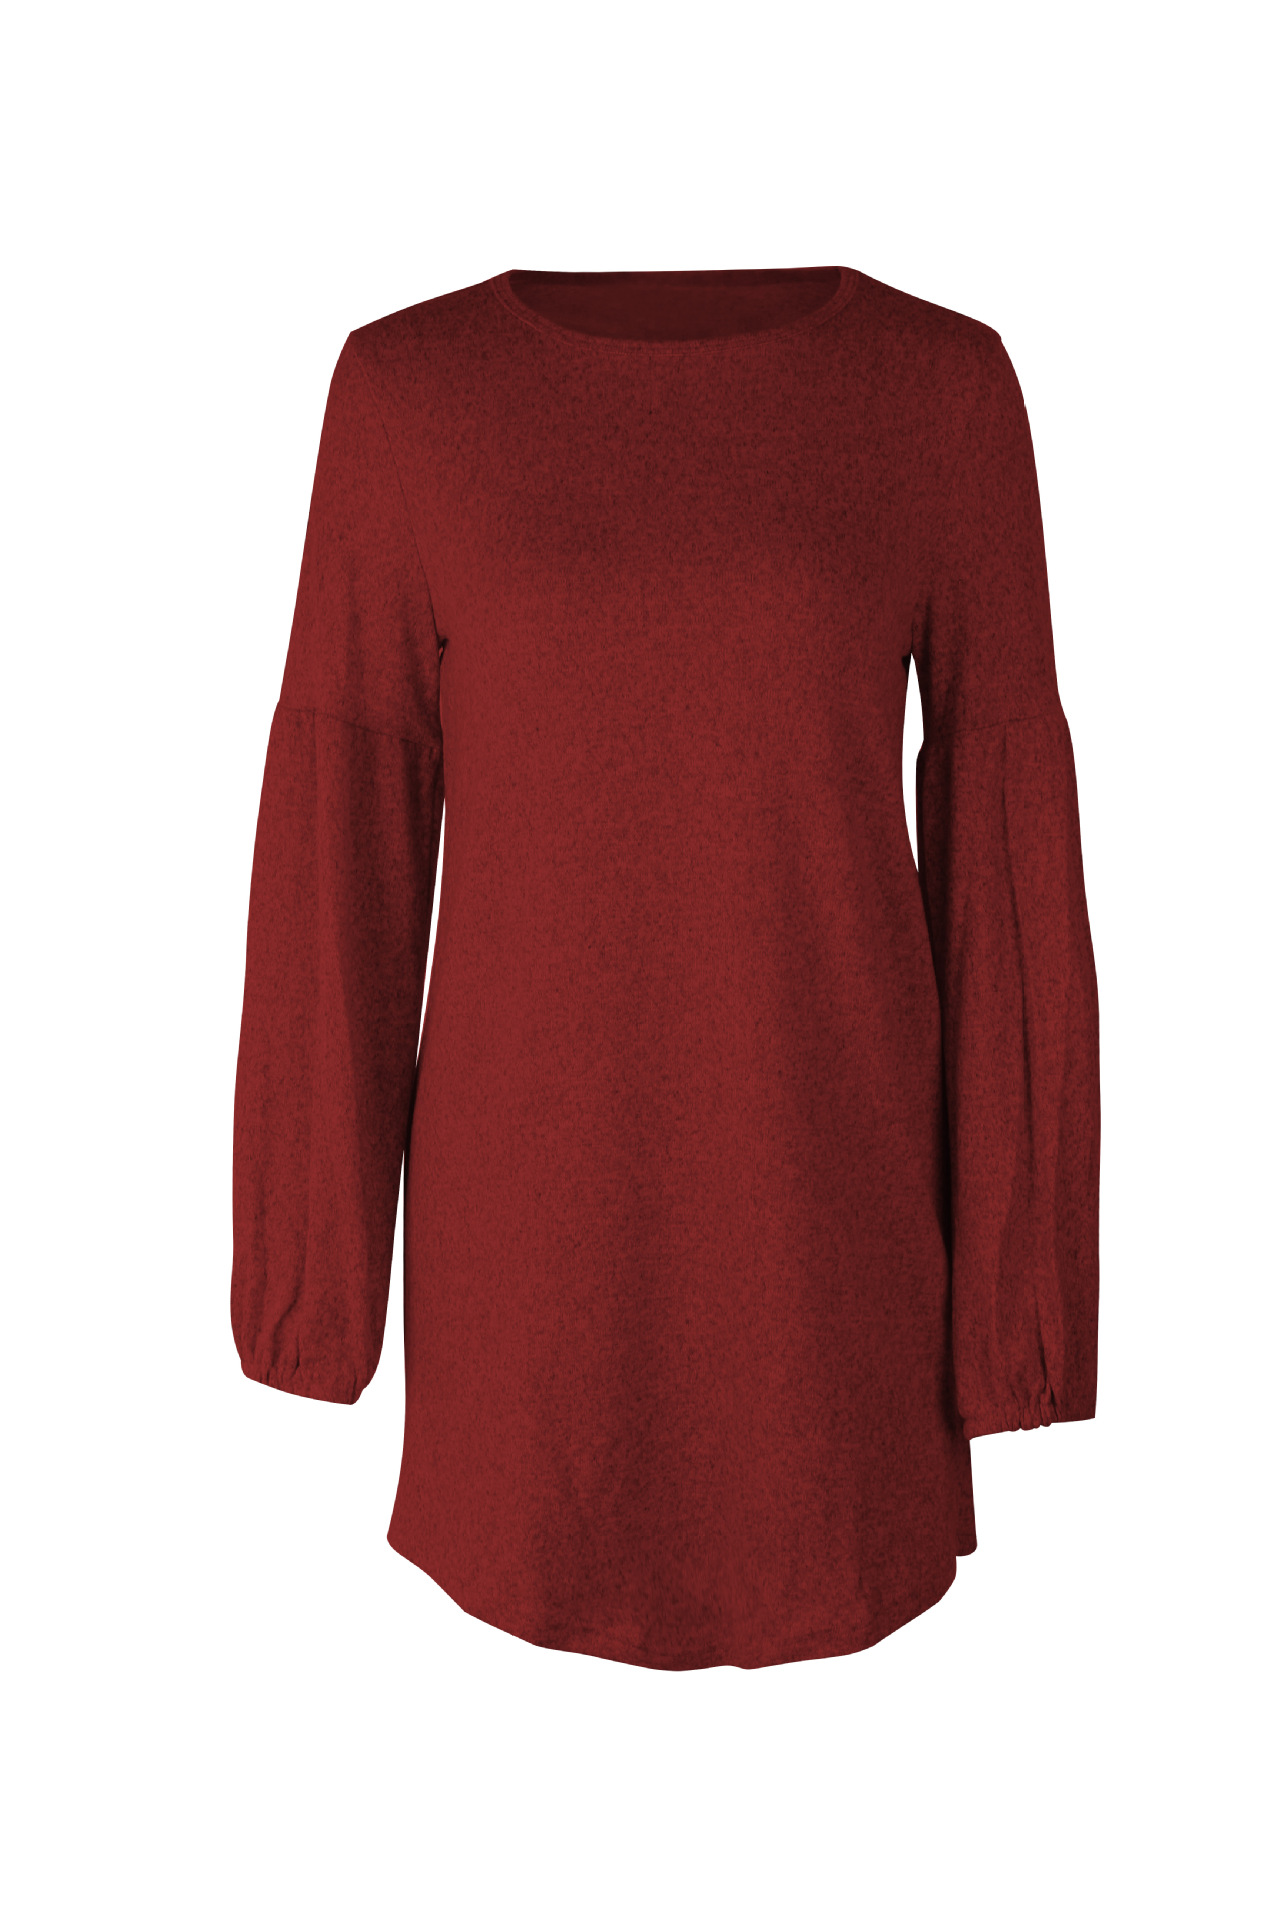 Women Knitted Dress Autumn Winter Long Lantern Sleeve Causal Loose Short A line Sweater Dress crimson